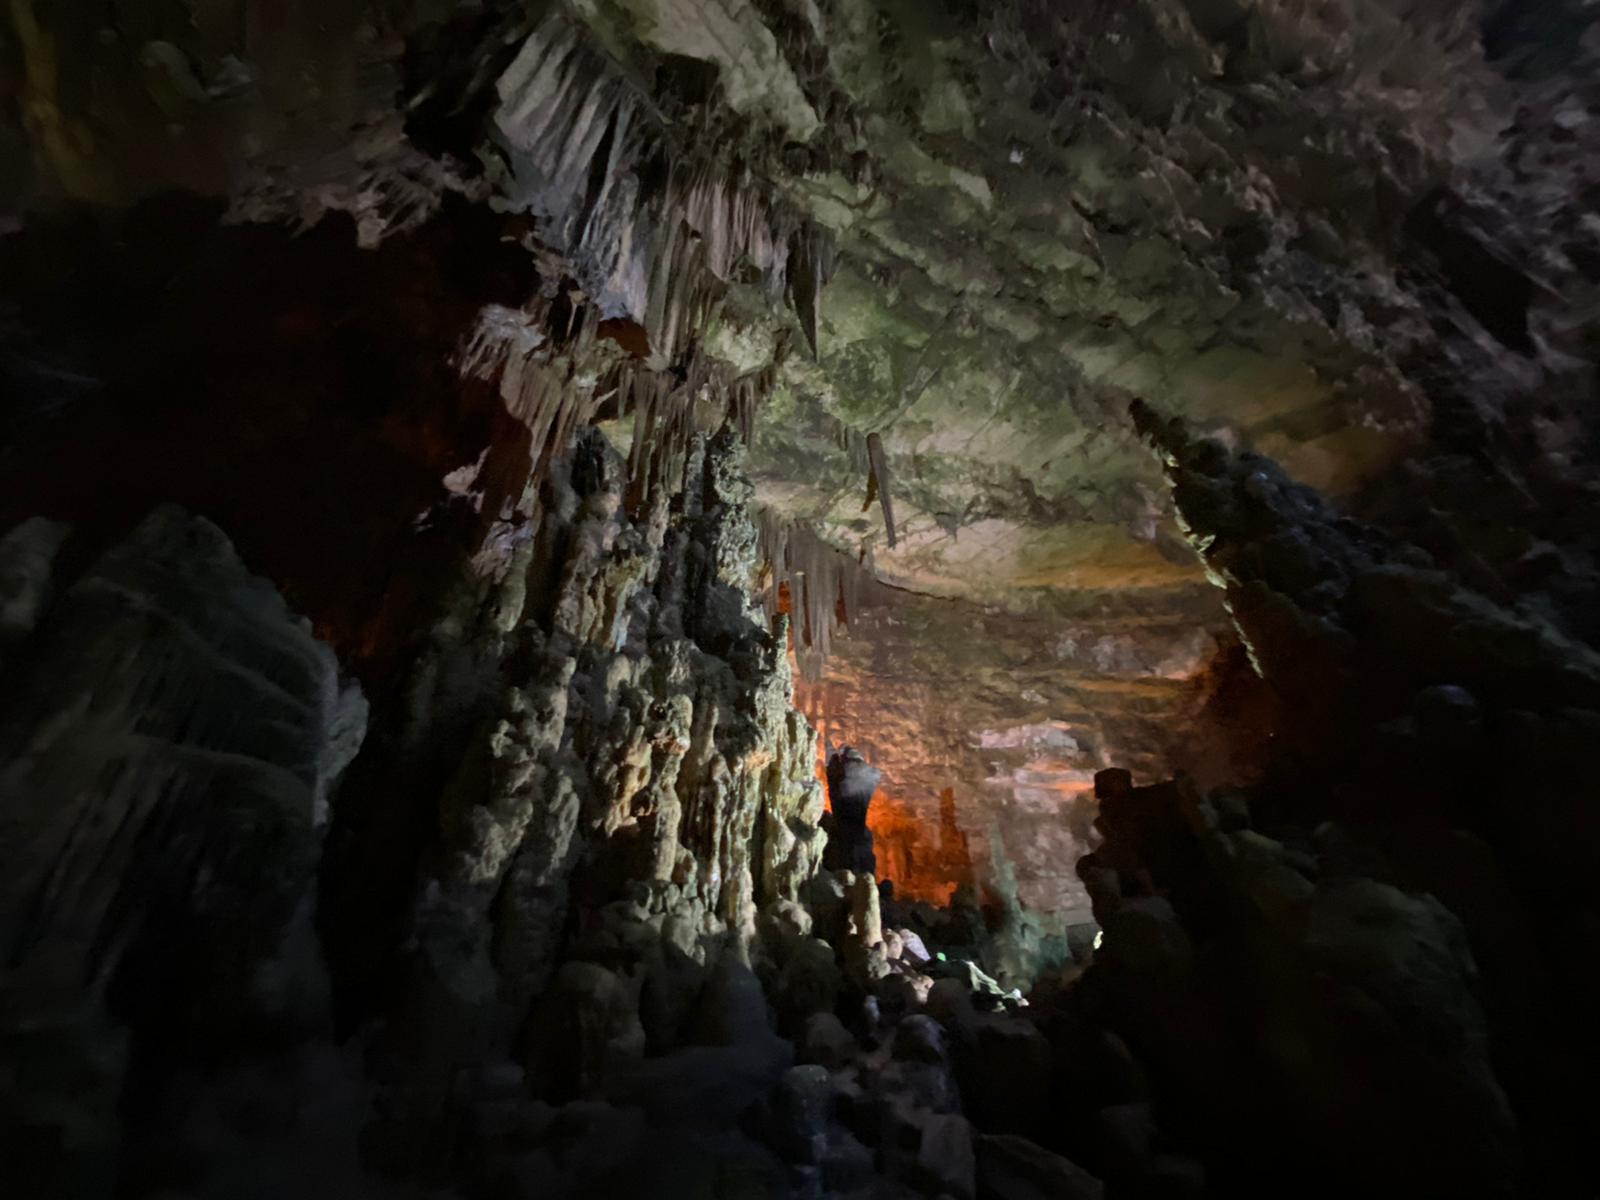 Galleria Emiliano alla riapertura delle Grotte di Castellana: “venite a visitarle, sono uniche al mondo” - Diapositiva 7 di 13